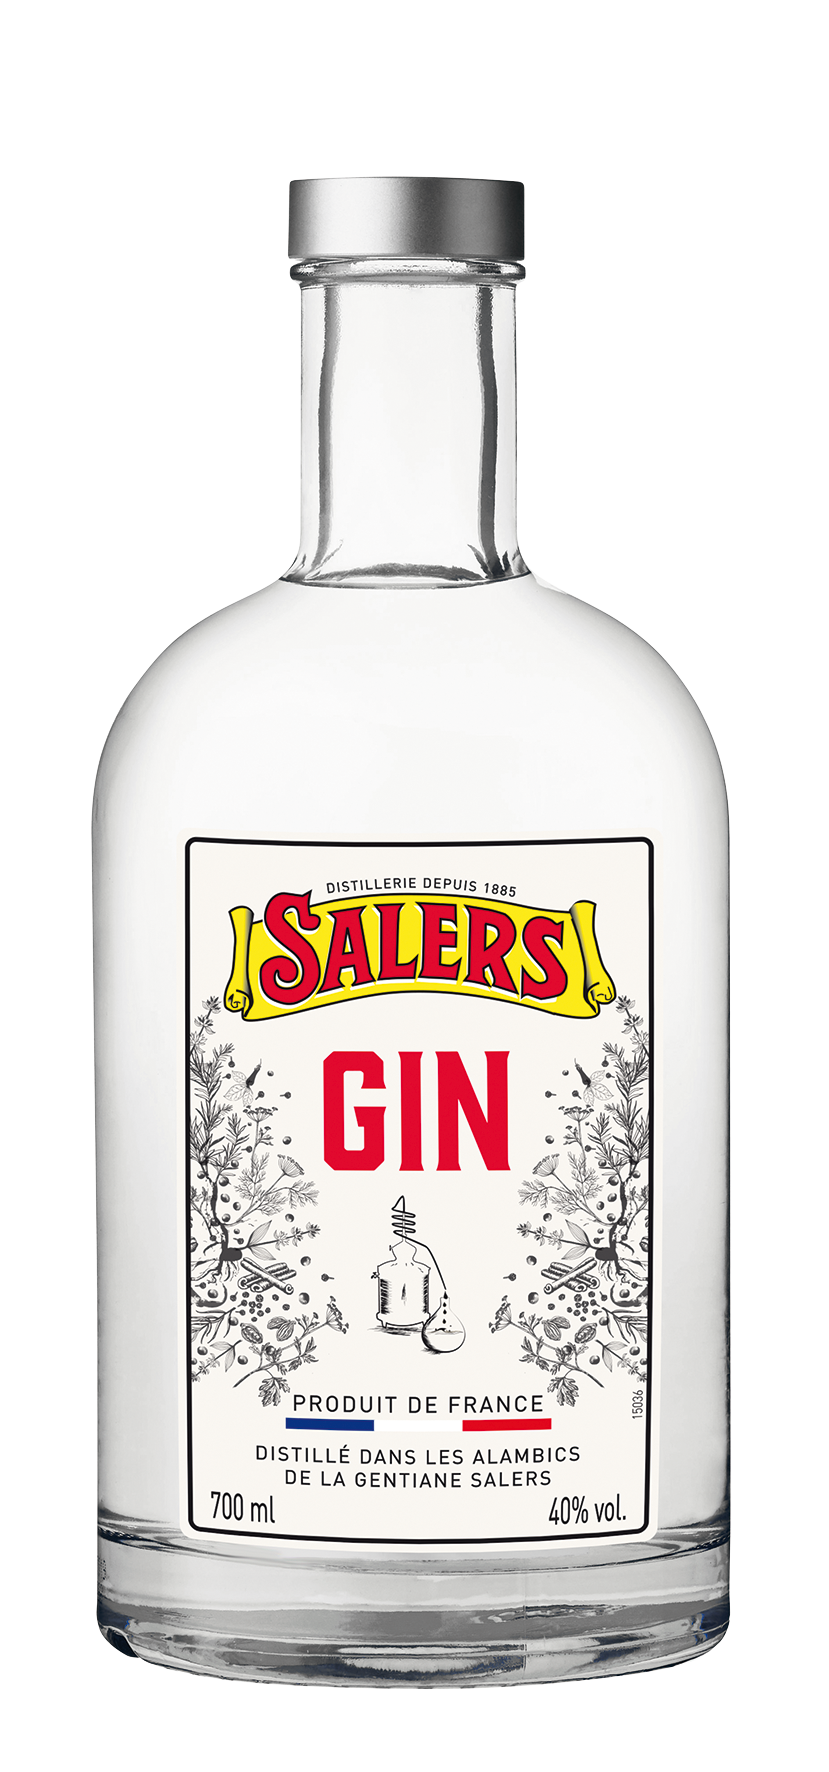 SALERS Distilled Gin 40% - 700ml